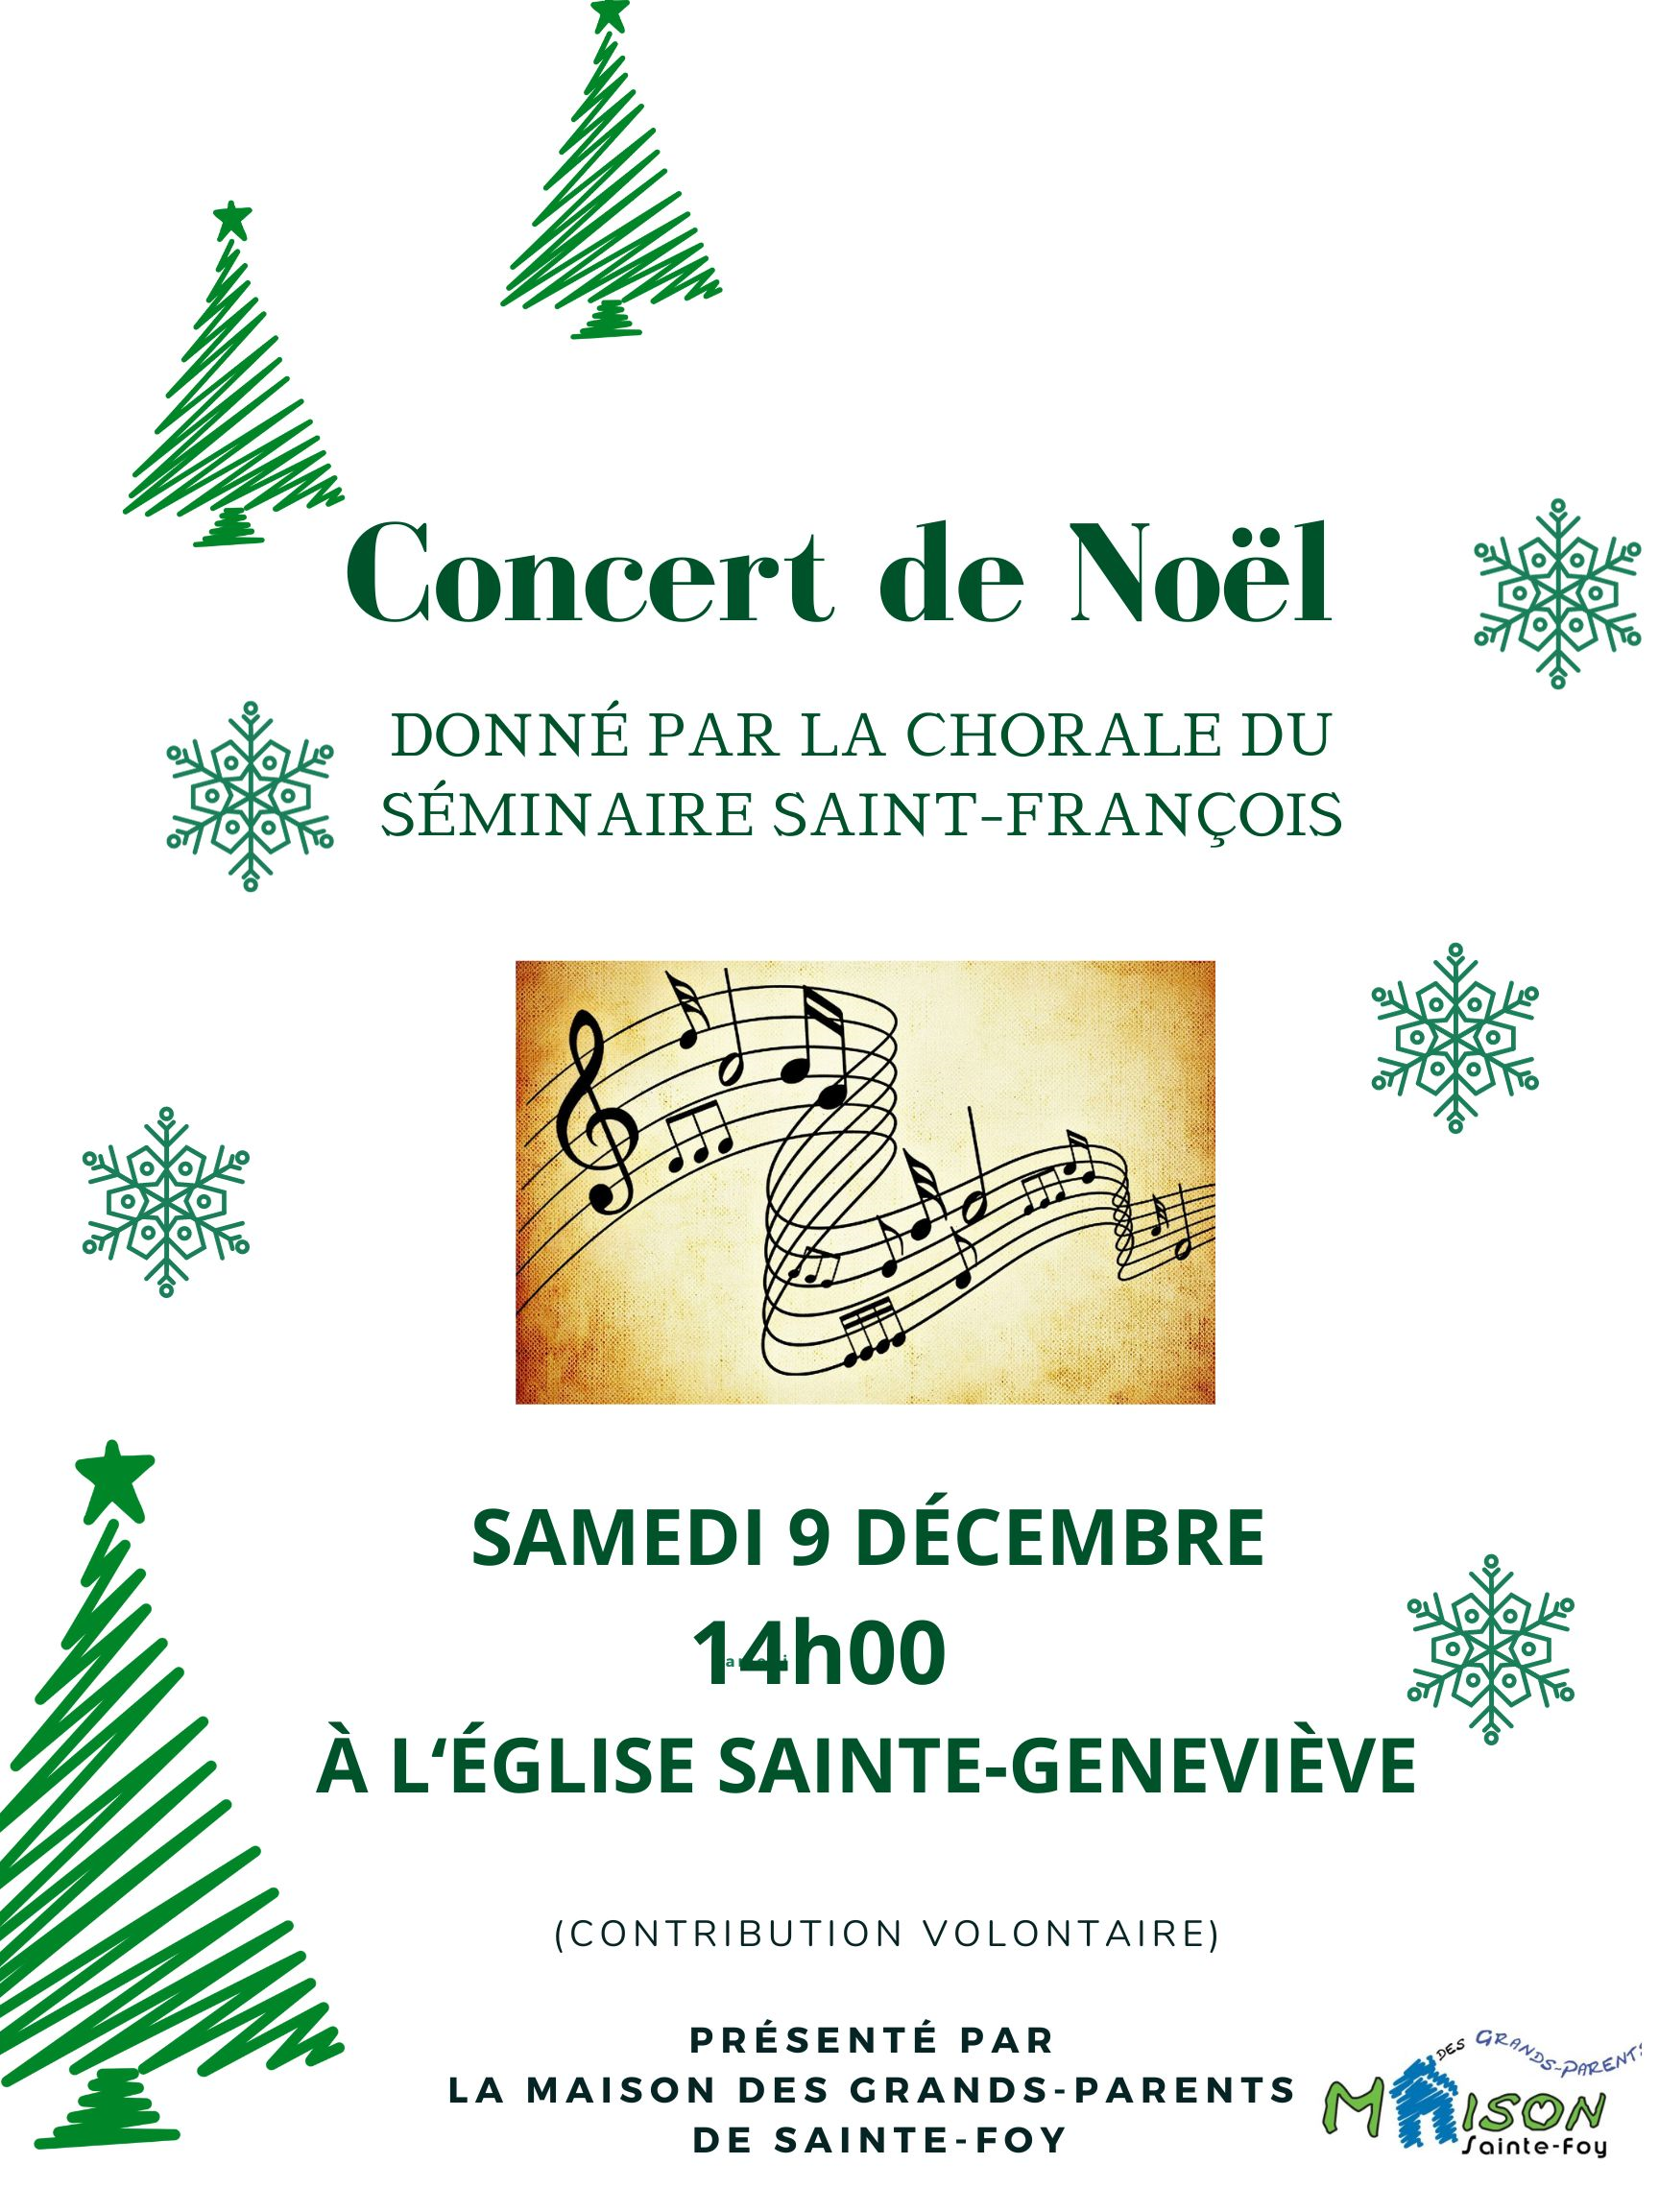 Concert de Noël du 9 décembre 2023 à 14 h dans l'église Sainte-Geneviève